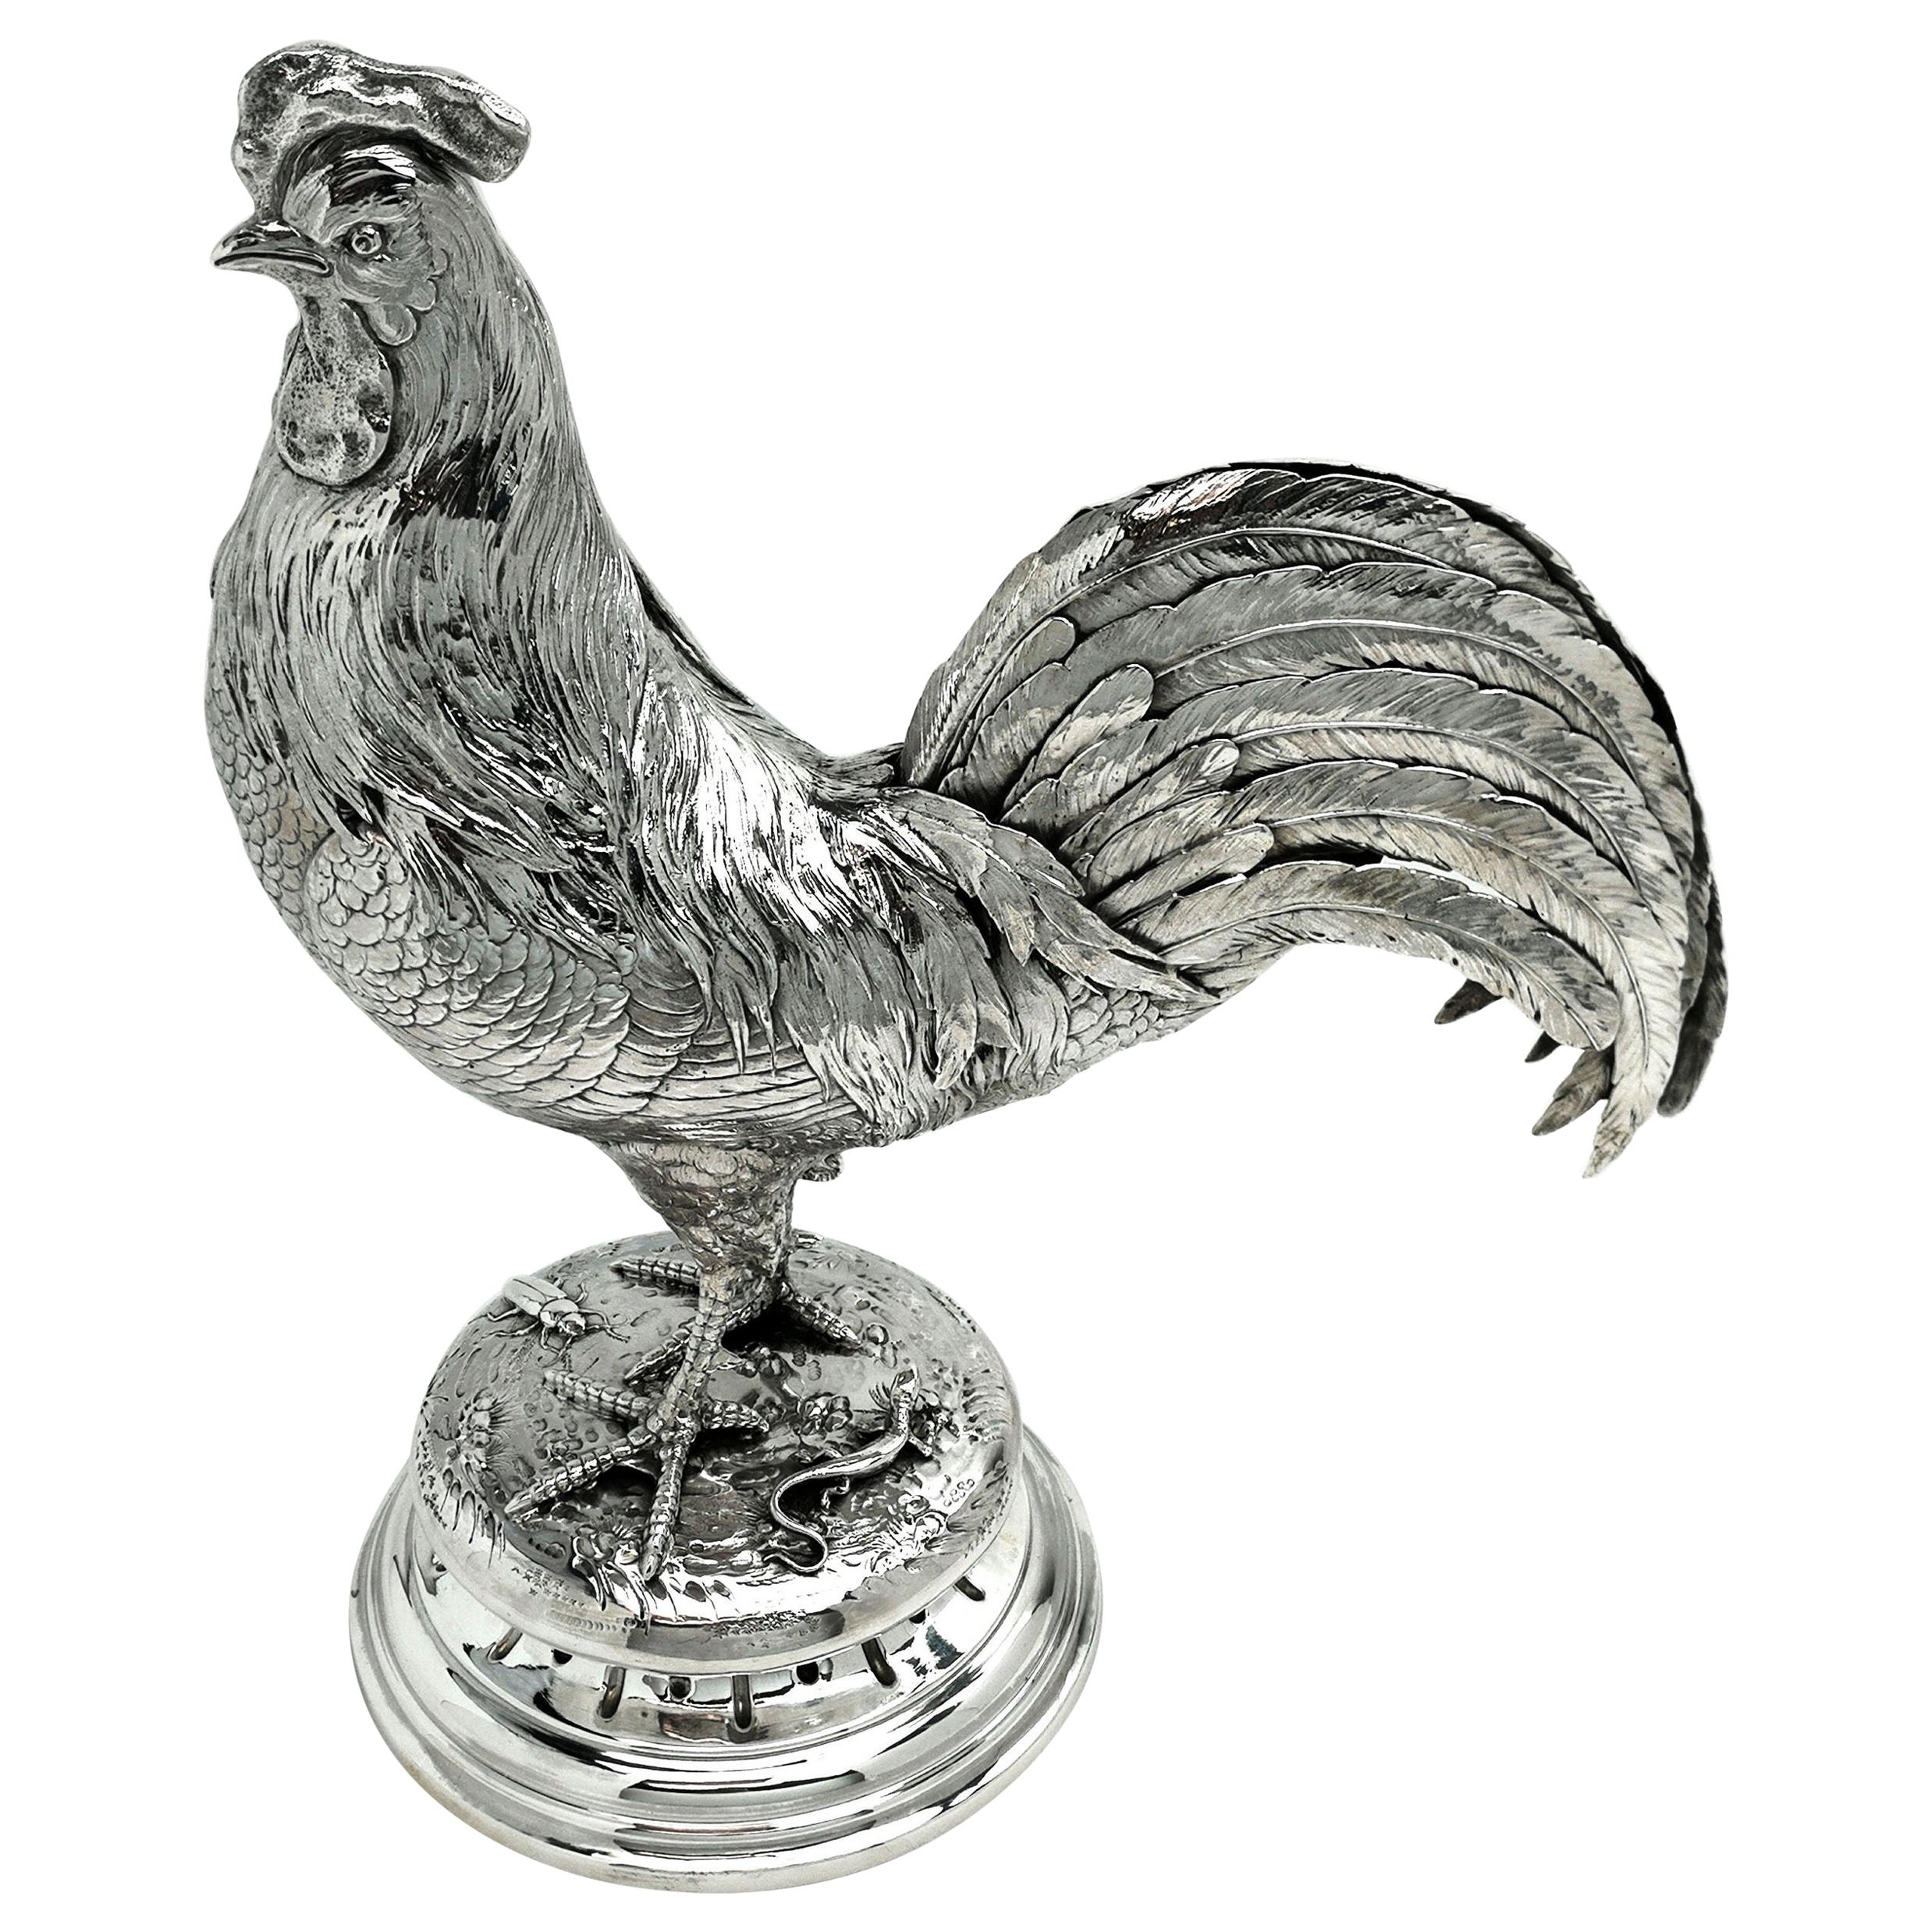 Antique German Silver Cockerel / Rooster Model Figure on Base 1899 ‘Import Mark’ For Sale